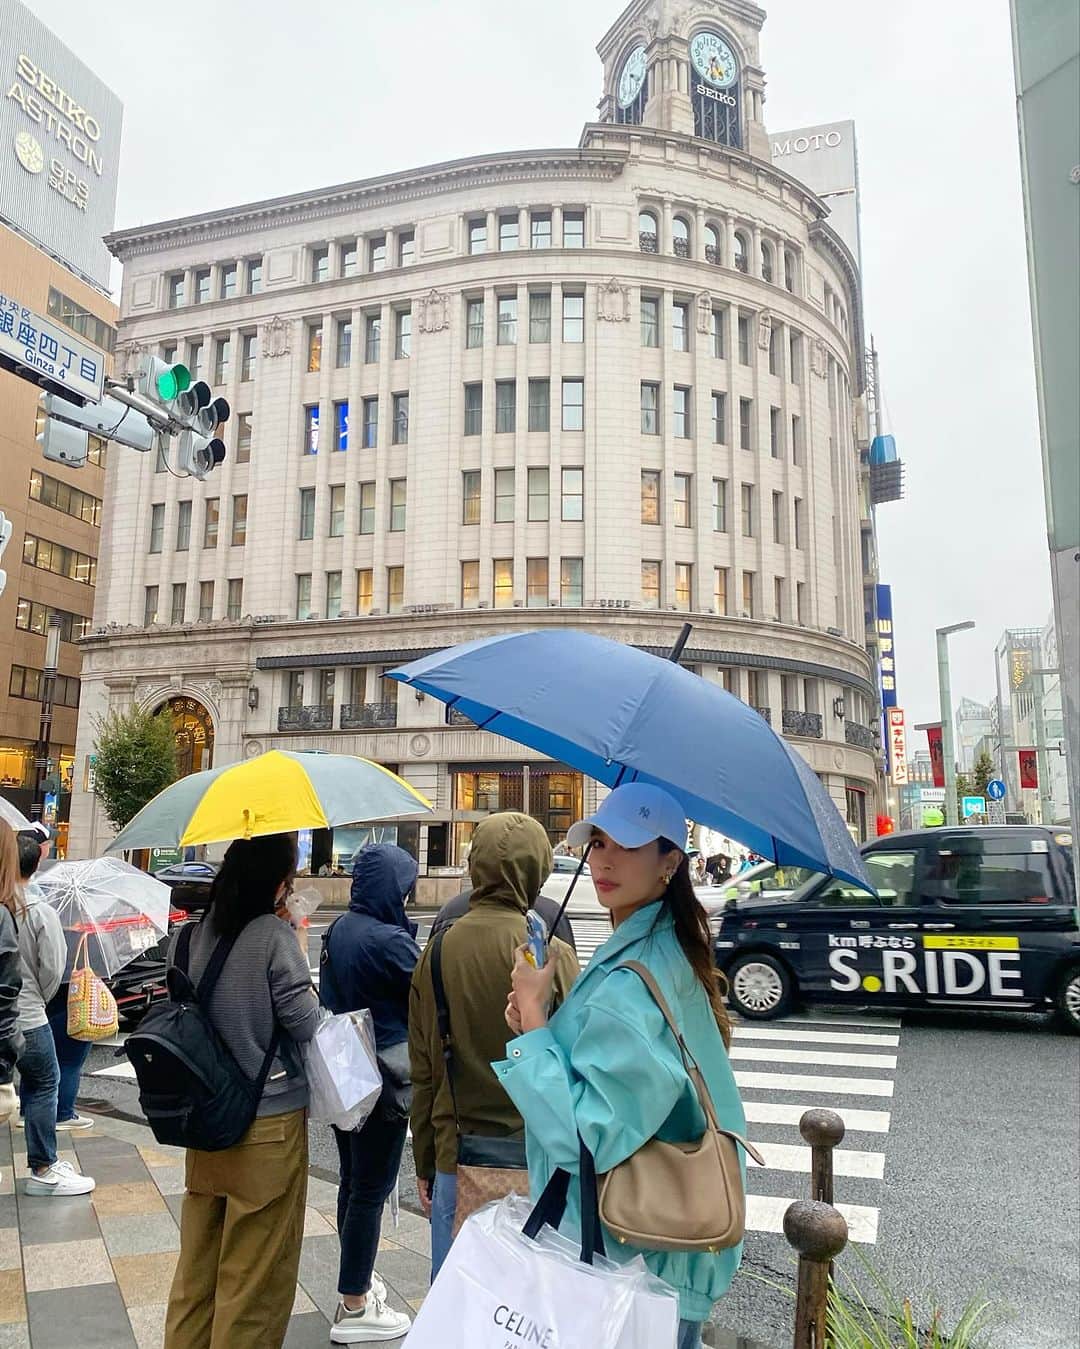 ウィウ＝ワンナロット・ソンティチャイのインスタグラム：「Rainy day in Tokyo🇯🇵☔️ ไม่ได้มาญี่ปุ่นเกือบ5ปี คิดถึงมากก ช่วงนี้อากาศดีด้วยเย็นสบาย เริ่มหนาวแล้ว เจอฝนนิดนึงก่อนกลับ เคยชอบญี่ปุ่นยังไงก็ยังชอบเหมือนเดิม ดีไปหมดทุกอย่างทั้งบ้านเมือง ข้าวของ อาหาร ผู้คน มาพักผ่อนกินเที่ยวช้อปปิ้งแฮปปี้สุดๆ นั่งเครื่องบินแค่5ชั่วโมงเอง ไฟลท์กลางคืนหลับแป๊บเดียวตื่นมาถึงเลย🥰💕 @thaiairways  #ThaiAirways #iFlyTHAI #SmoothAsSilk #MagicalJourney #การบินไทย #รักคุณเท่าฟ้า」